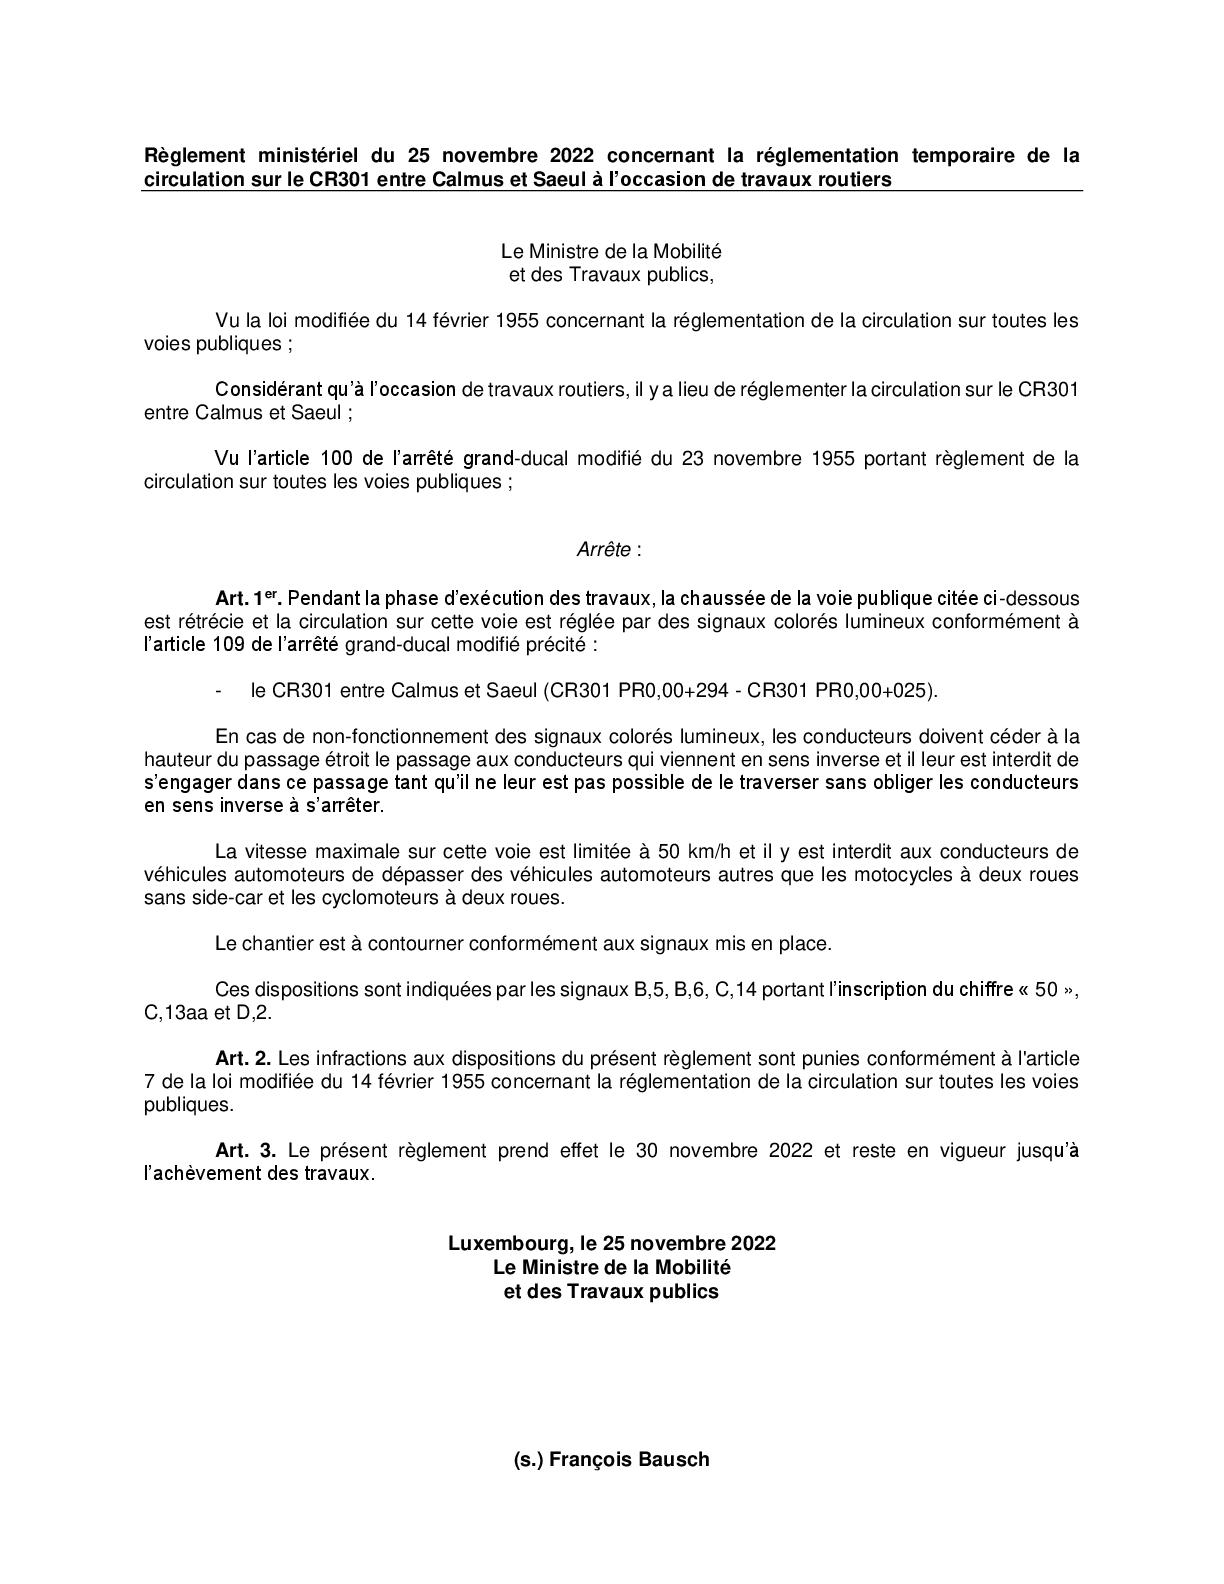 Règlement ministériel du 25 novembre 2022 concernant la réglementation temporaire de a circulation sur le CR301 entre Calmus et Saeul à l'occasion de travaux routiers